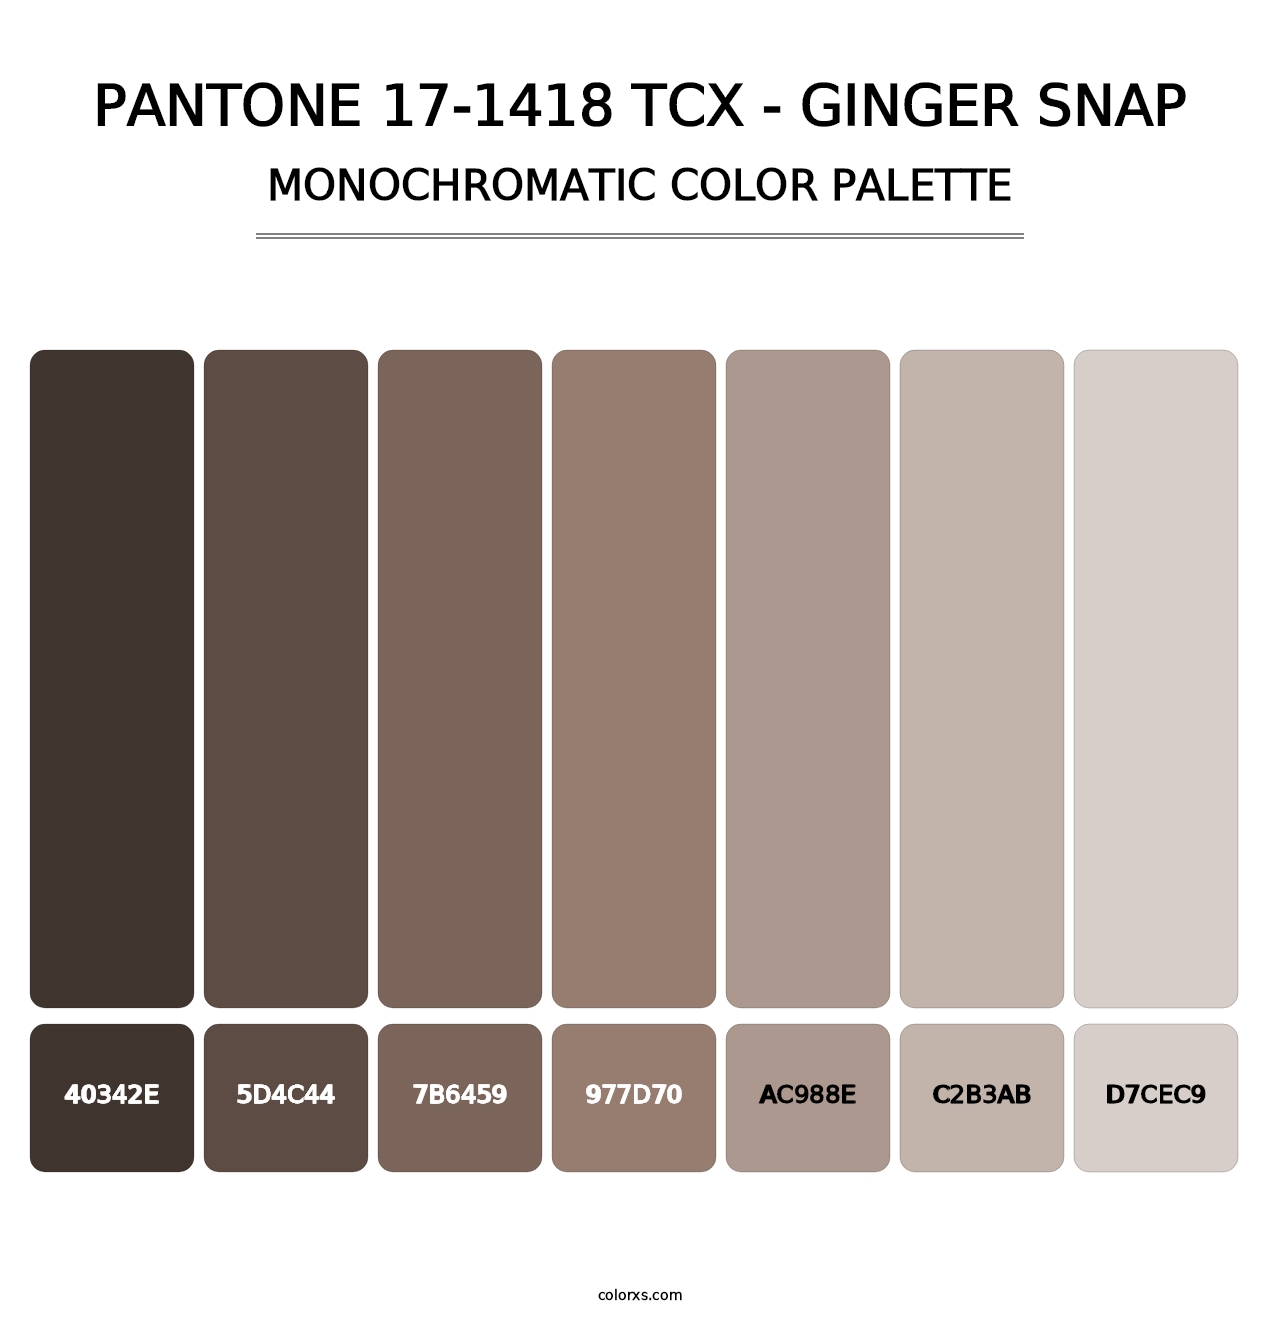 PANTONE 17-1418 TCX - Ginger Snap - Monochromatic Color Palette